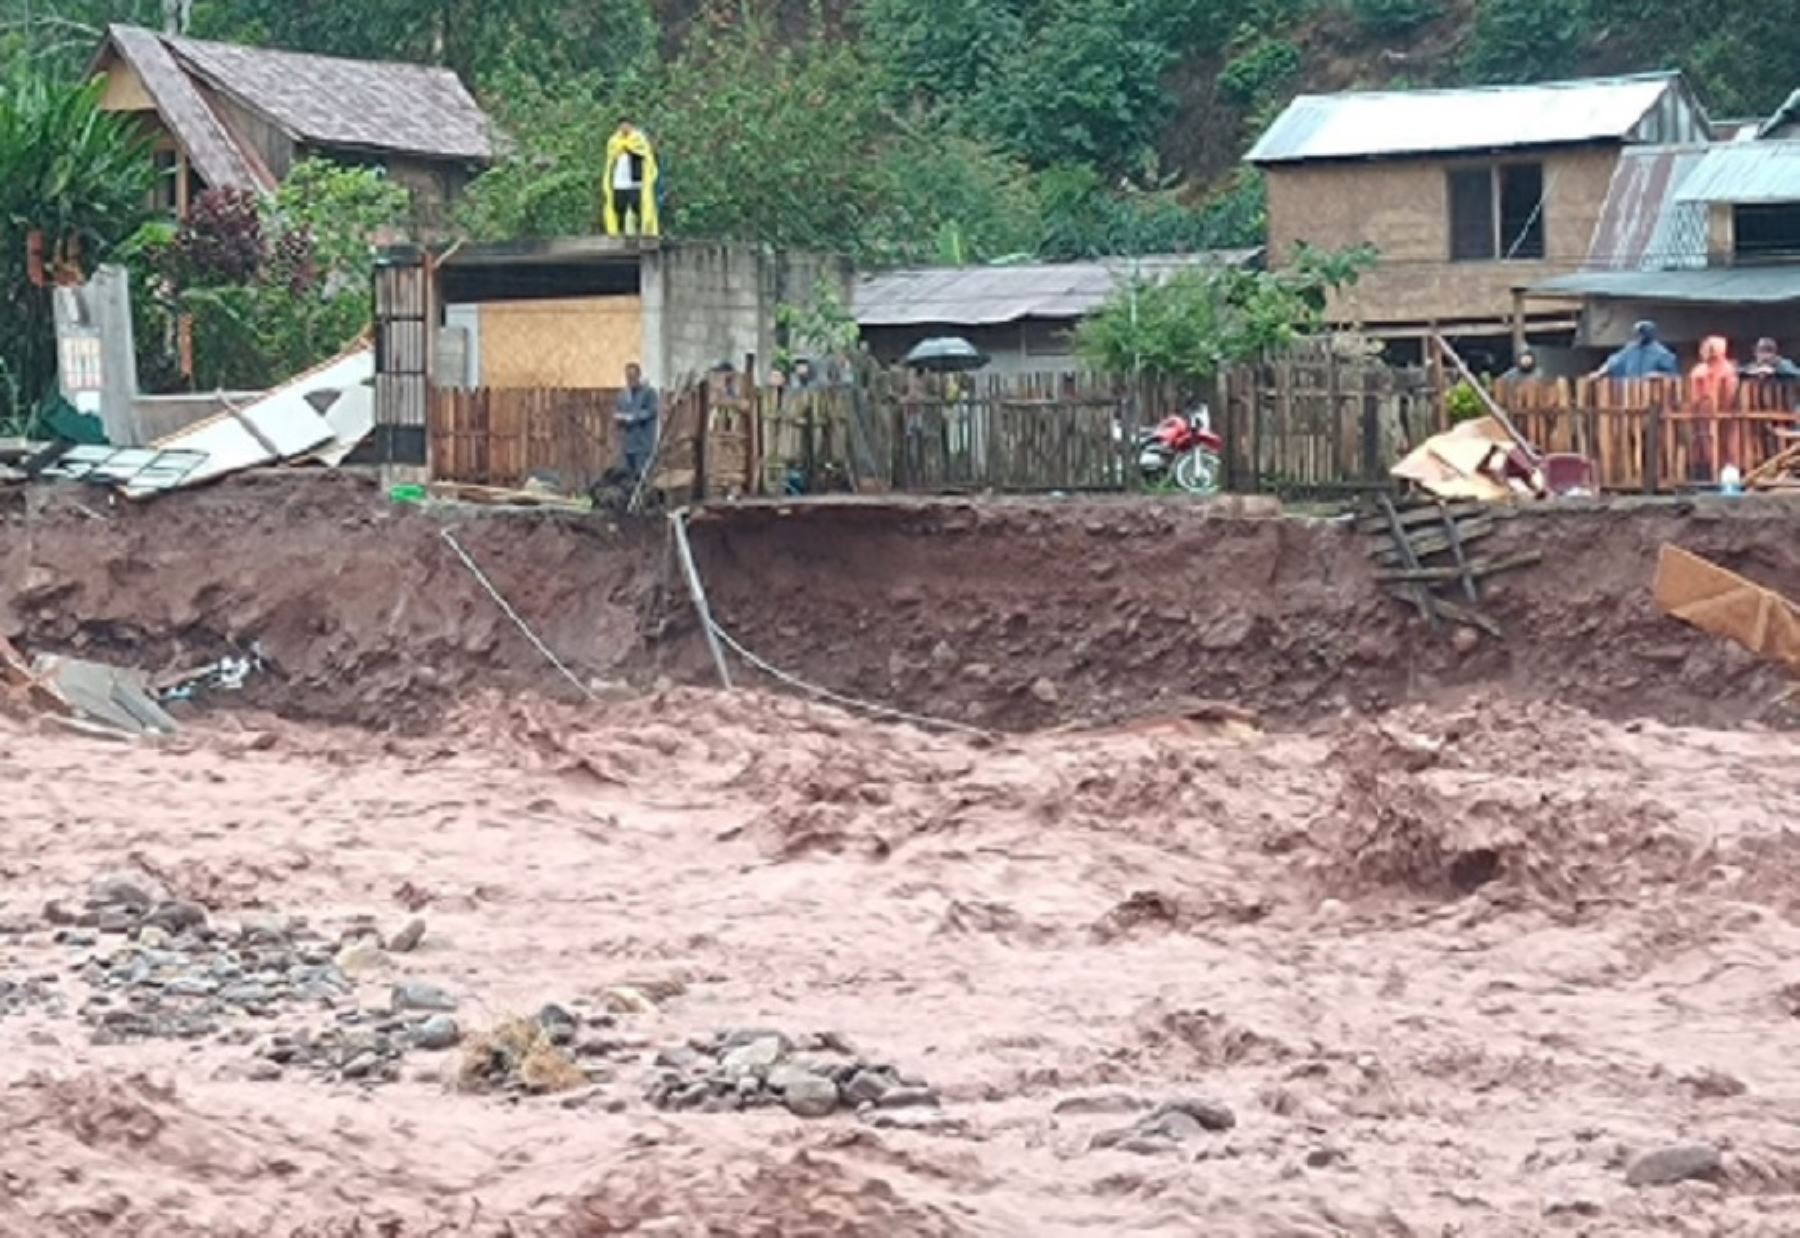 Varias viviendas del distrito de Villa Rica, provincia de Oxapampa, región Pasco, construidas en las riberas del río Entaz fueron destruidas por su desborde provocado por las intensas lluvias que se registran en esta parte del país.